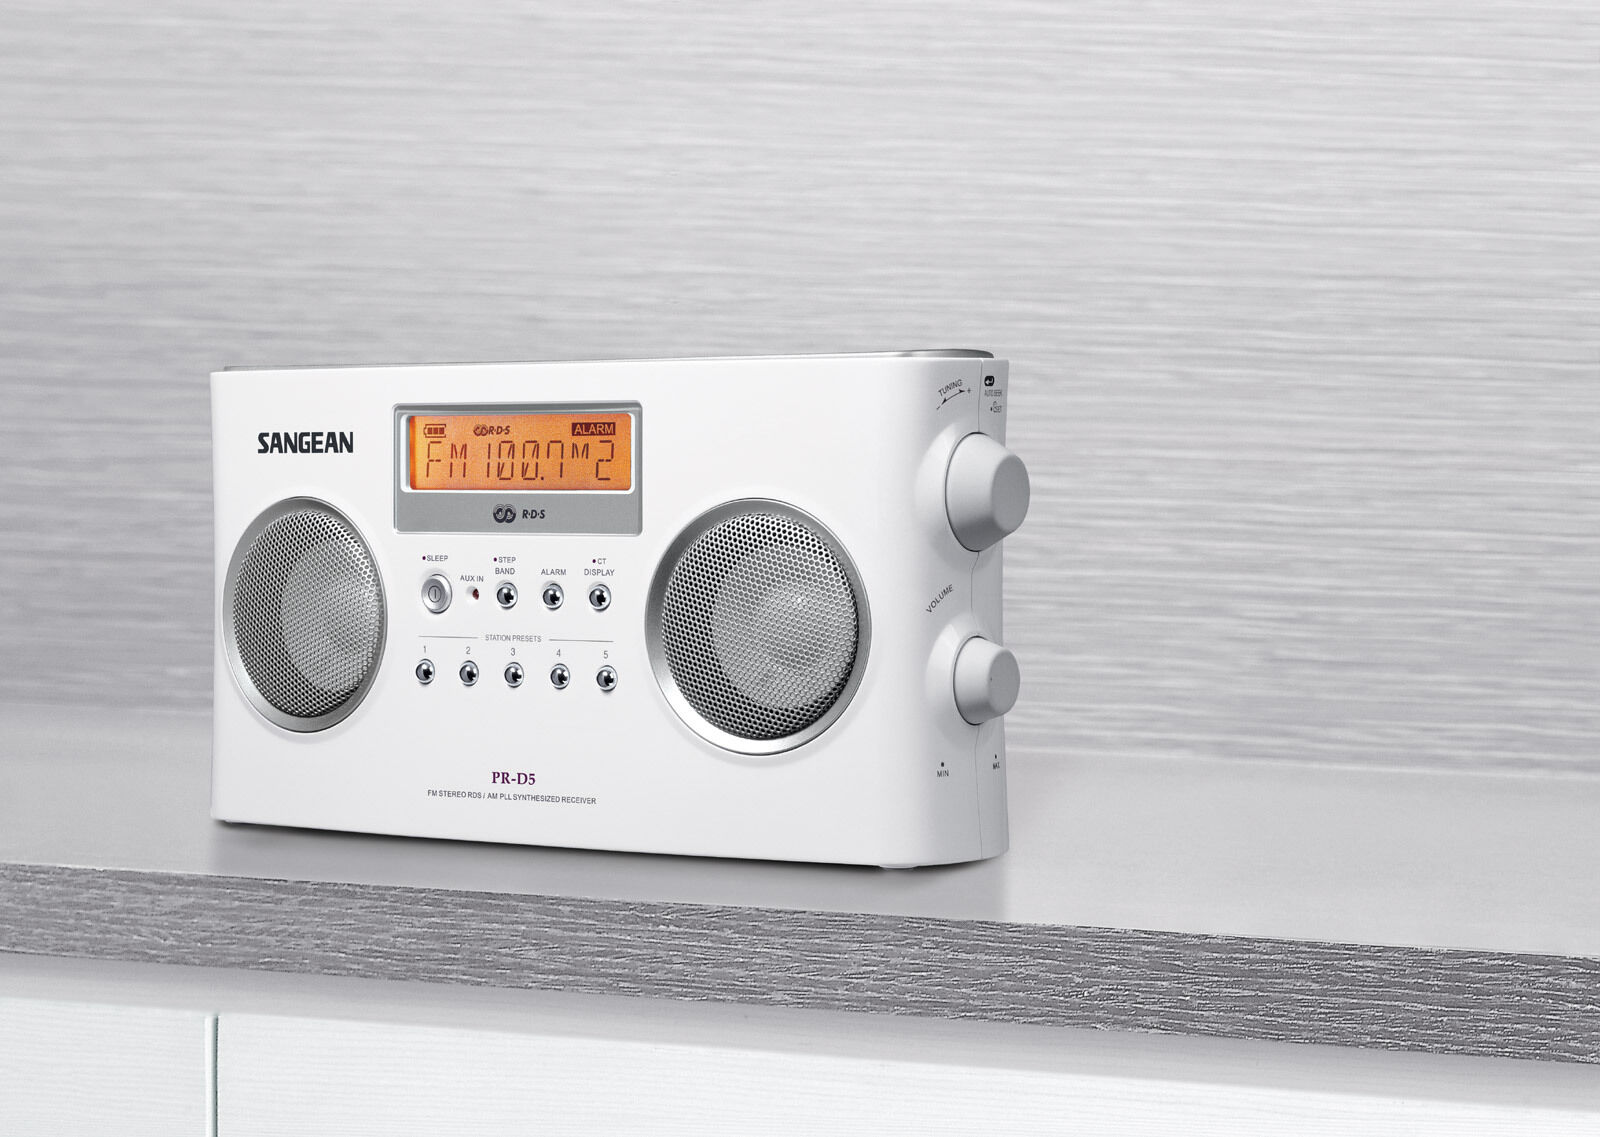 NEW Sangean PR-D5 PLL Digital AM/FM Portable Radio Receiver w/ 110V AC Adapter